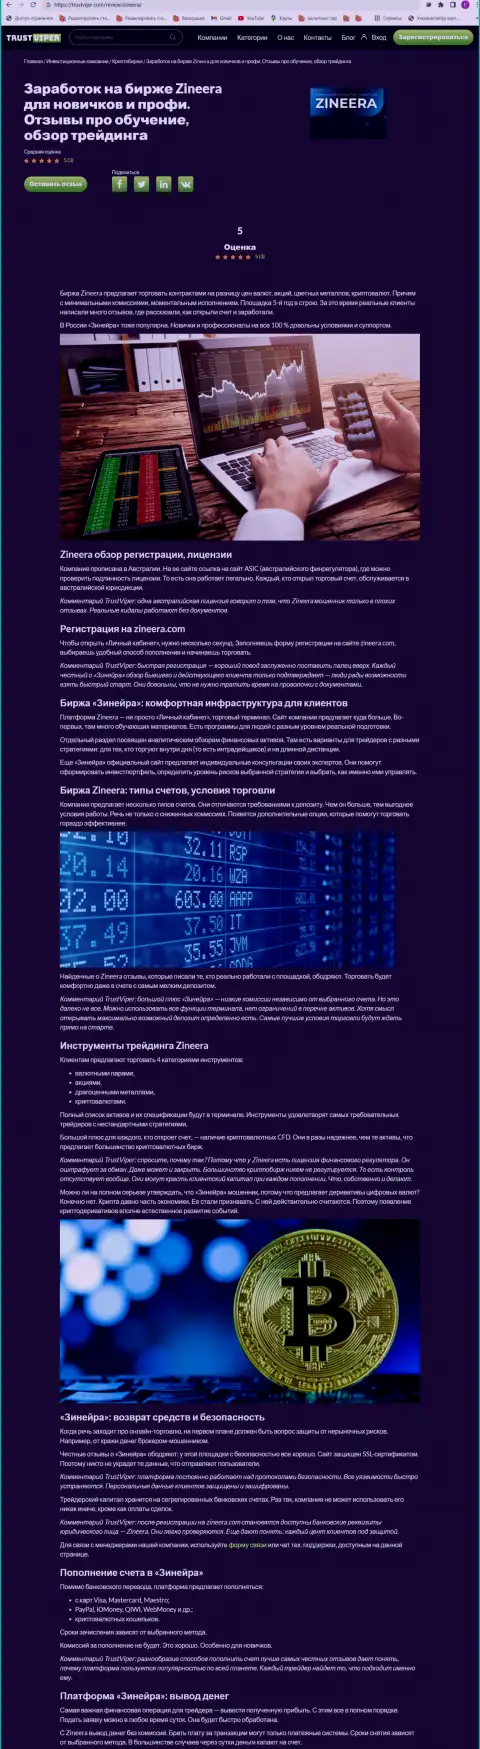 Обзор условий для торговли криптовалютной брокерской организации Zinnera на сайте Траствайпер Ком